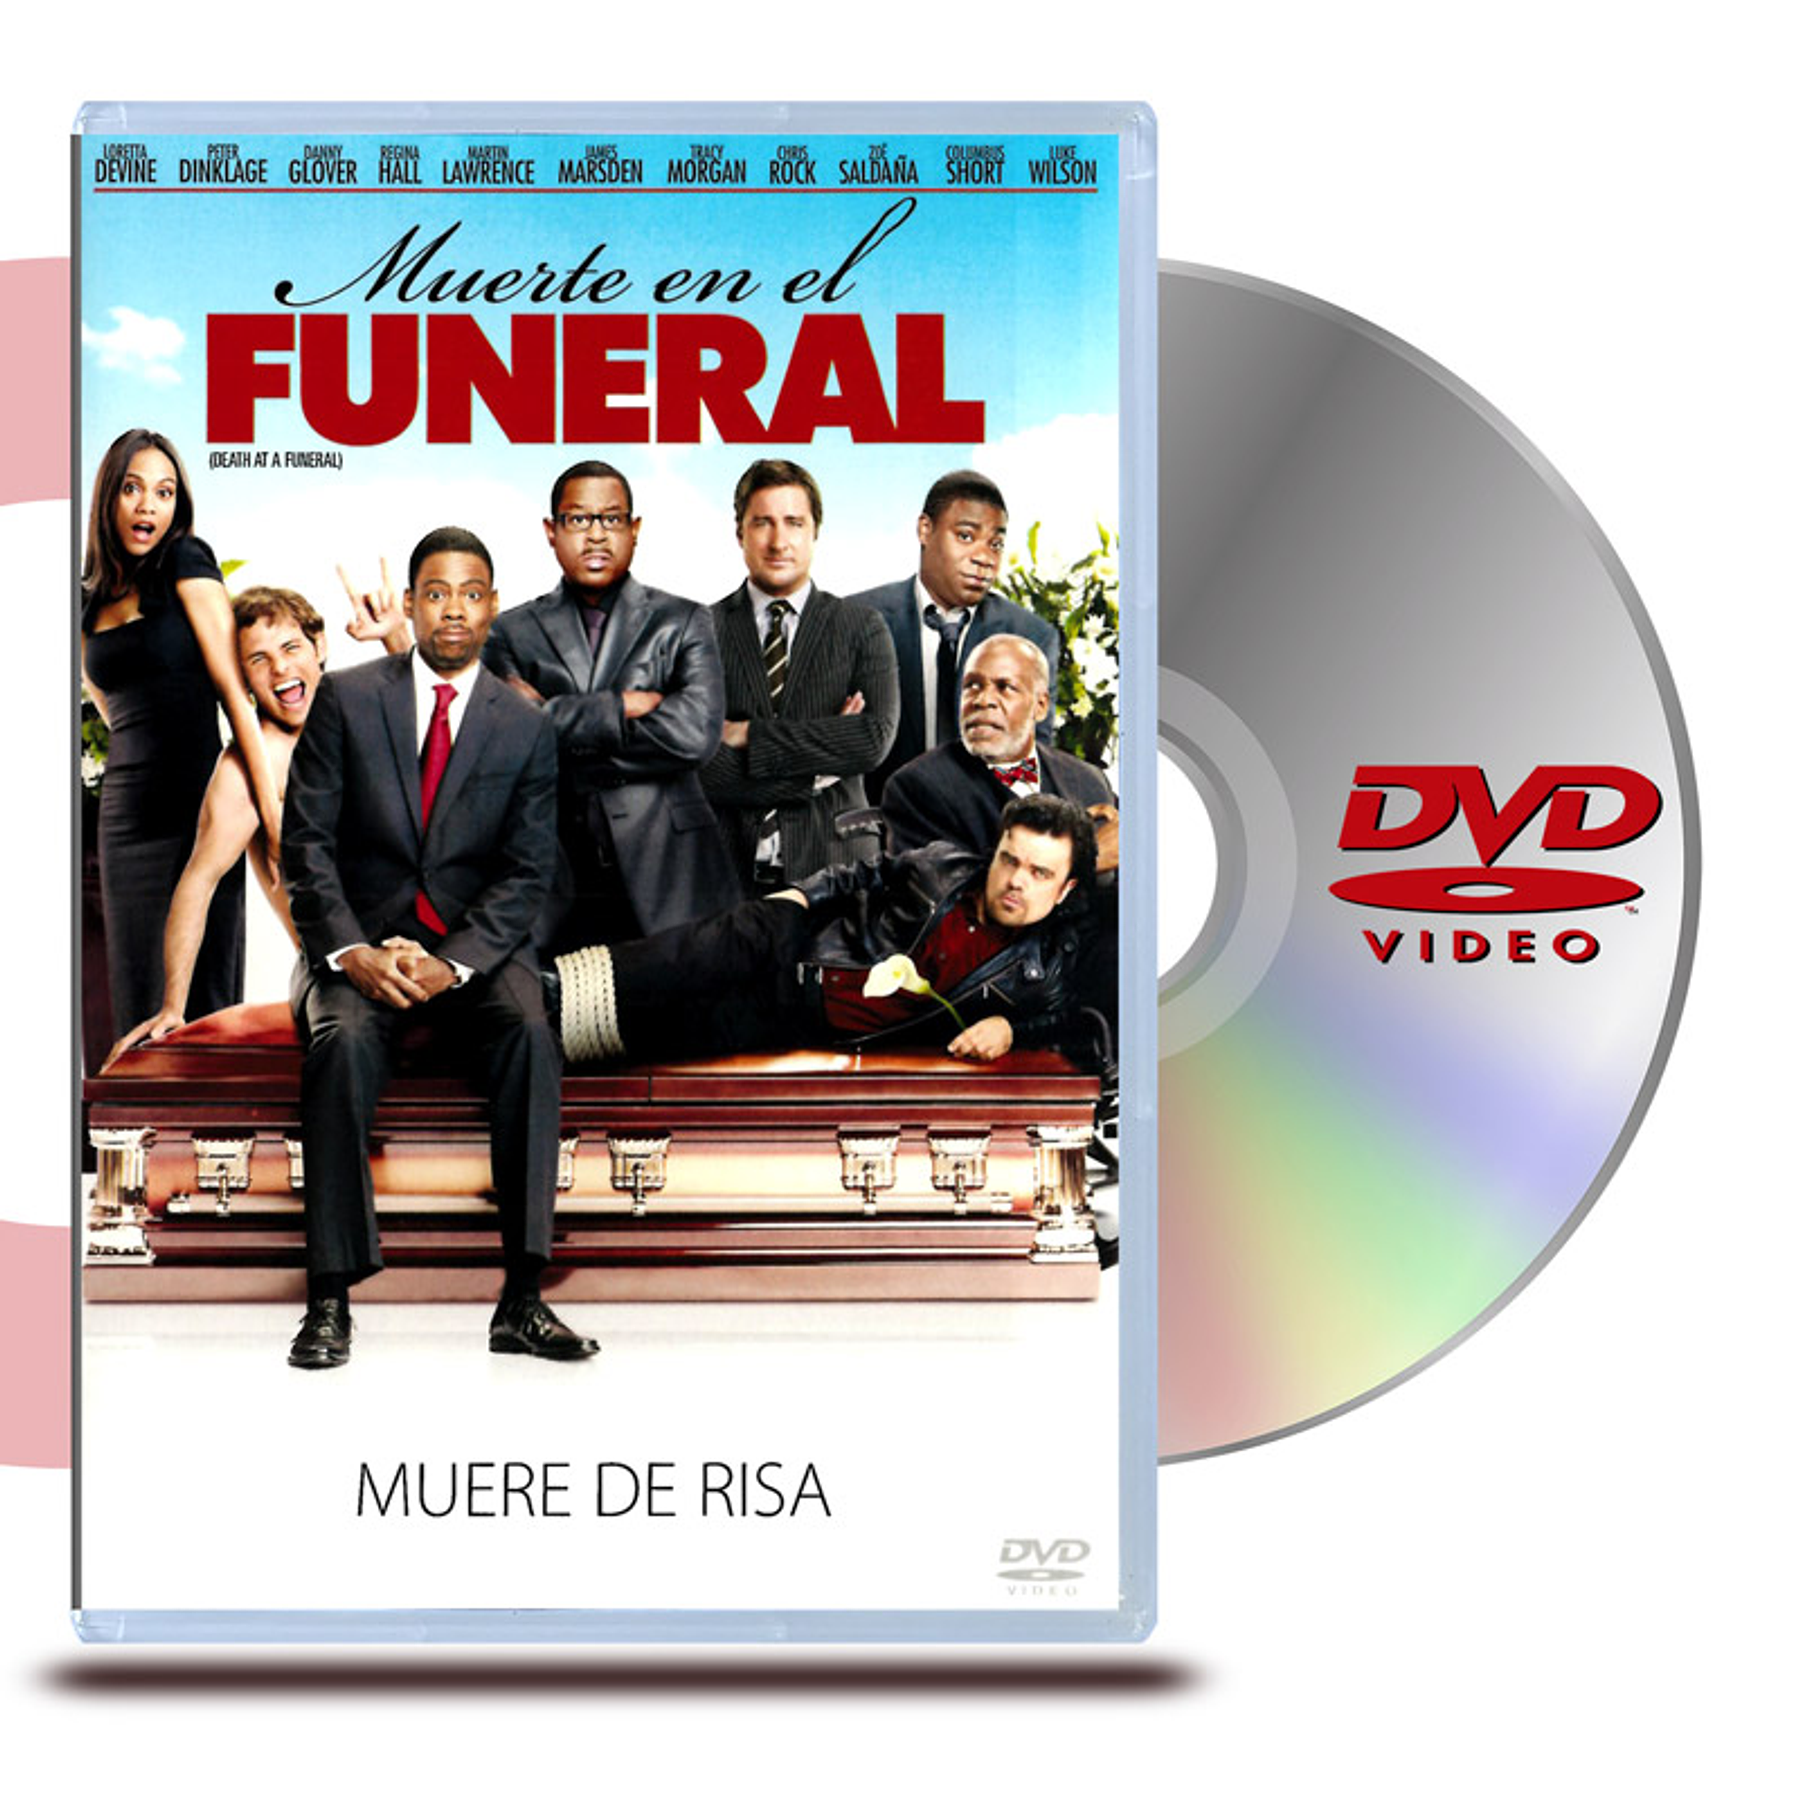 DVD MUERTE EN UN FUNERAL